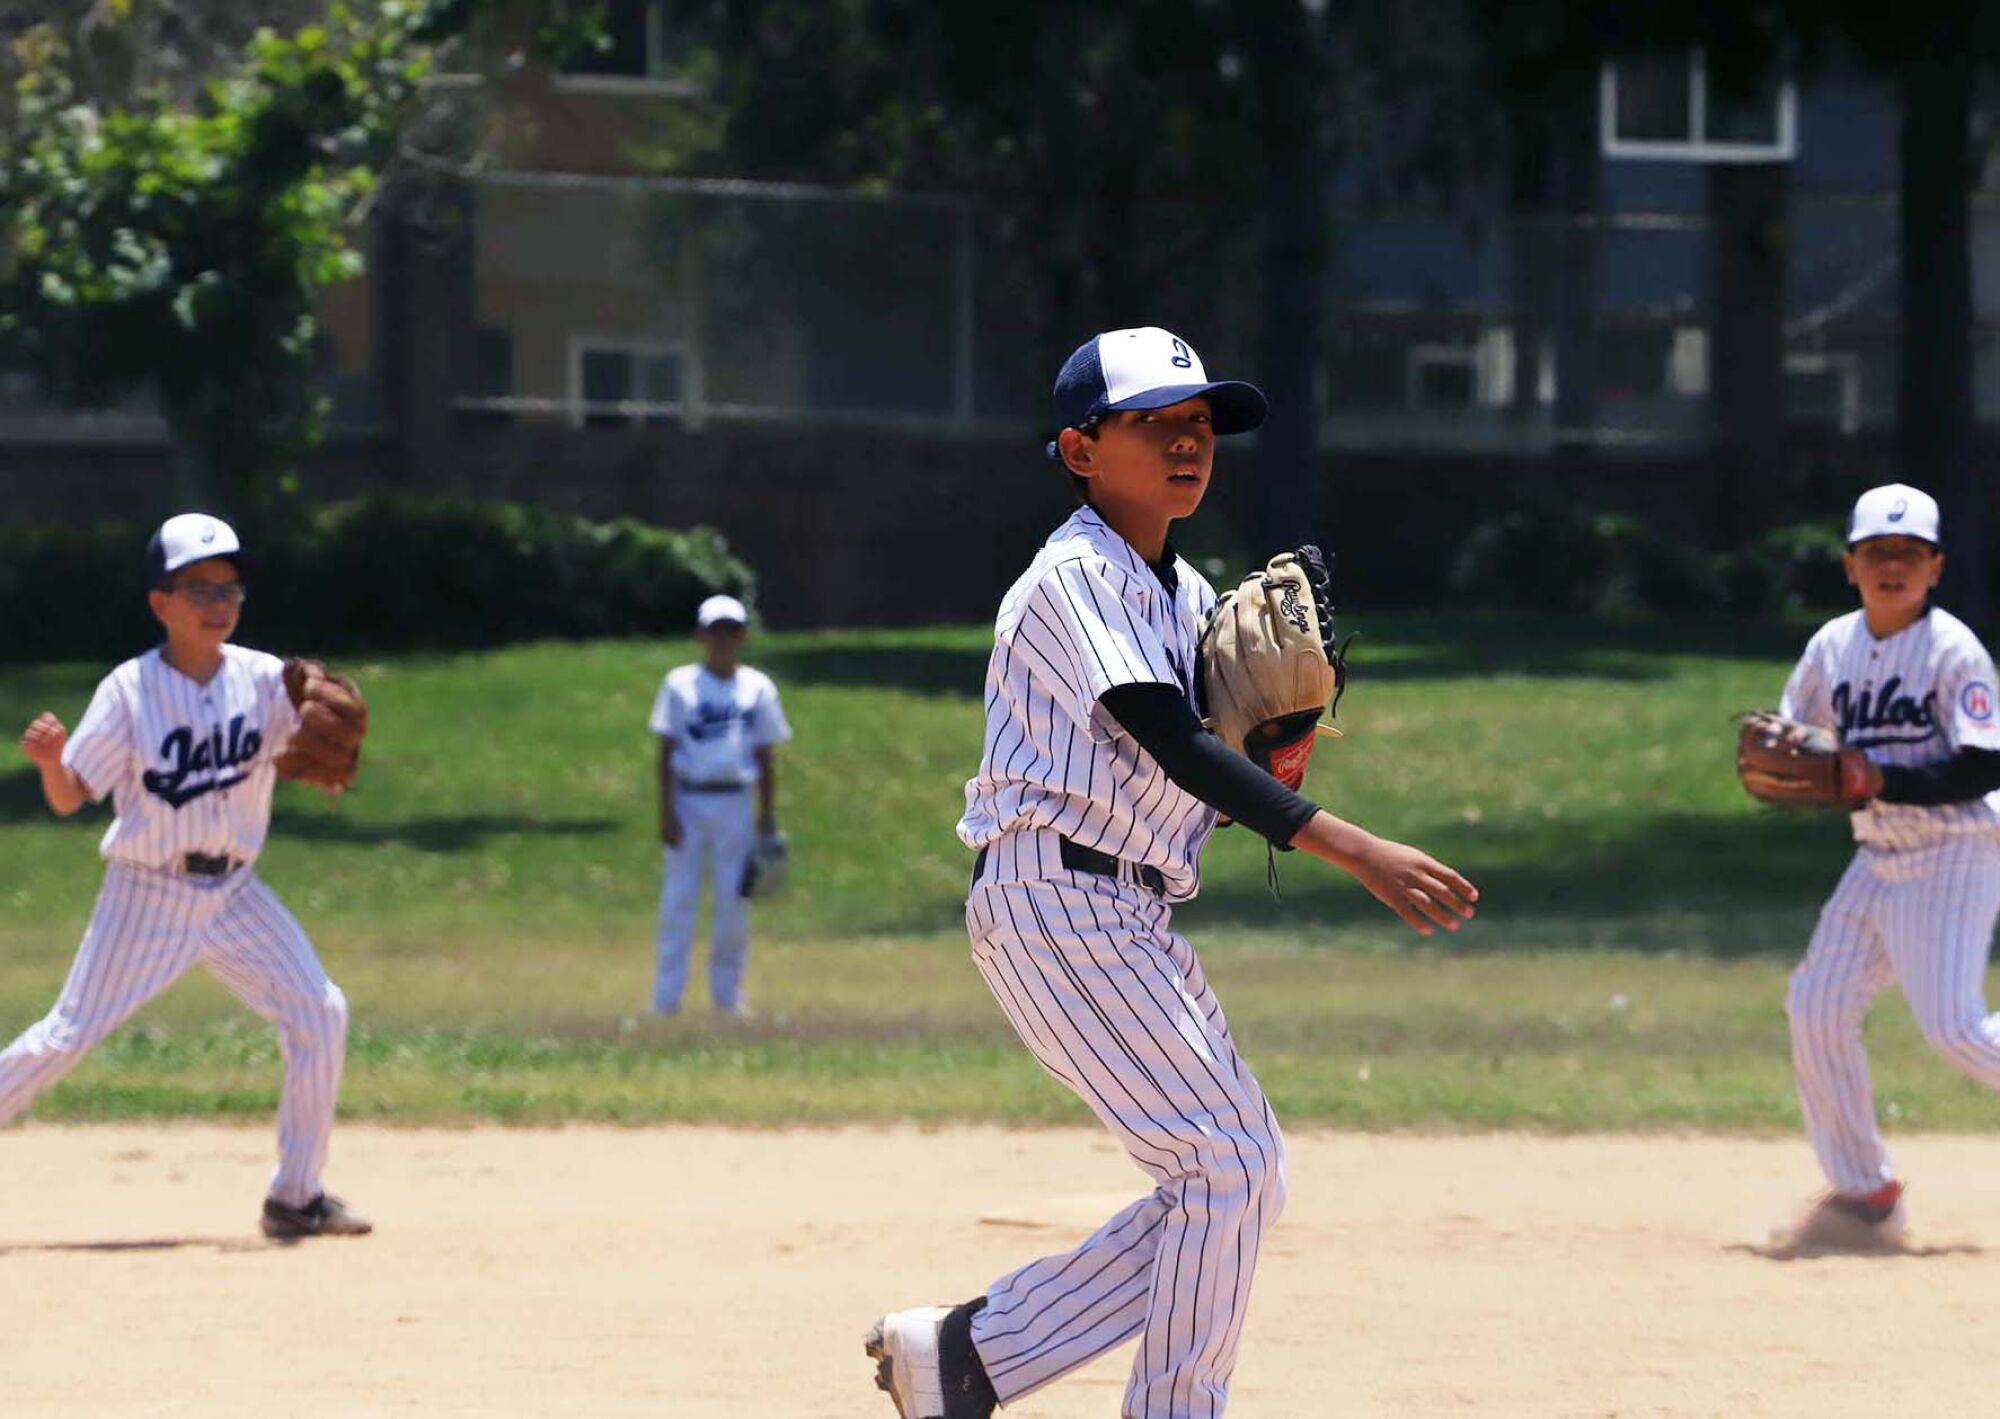 Un jeune joueur de baseball lance un lancer